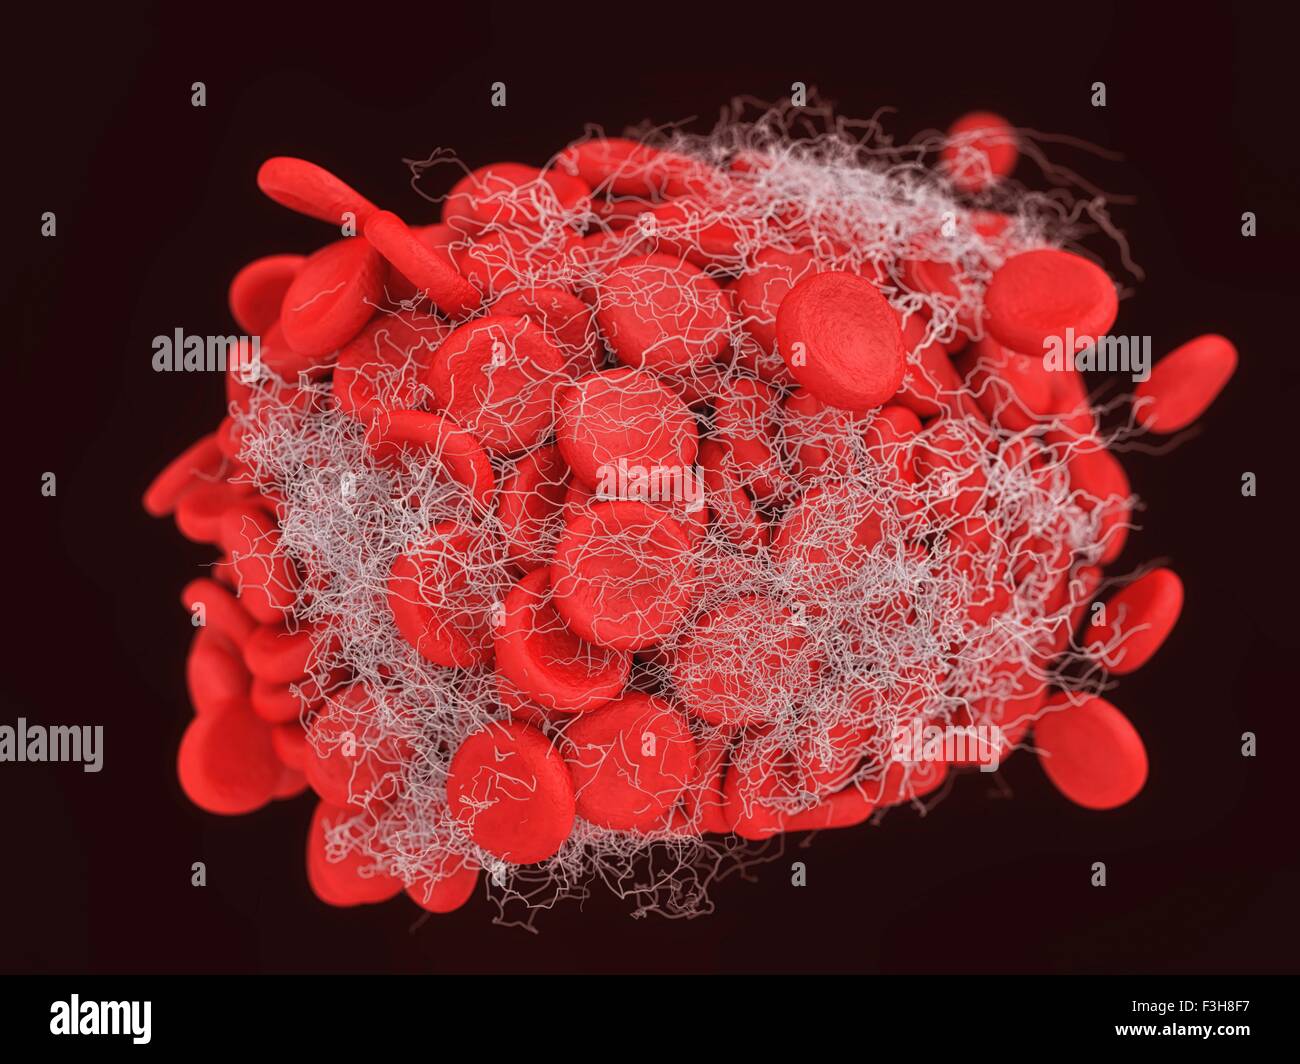 Illustration d'un caillot sanguin montrant un amas de globules rouges entrelacées dans une maille de fibrine Banque D'Images